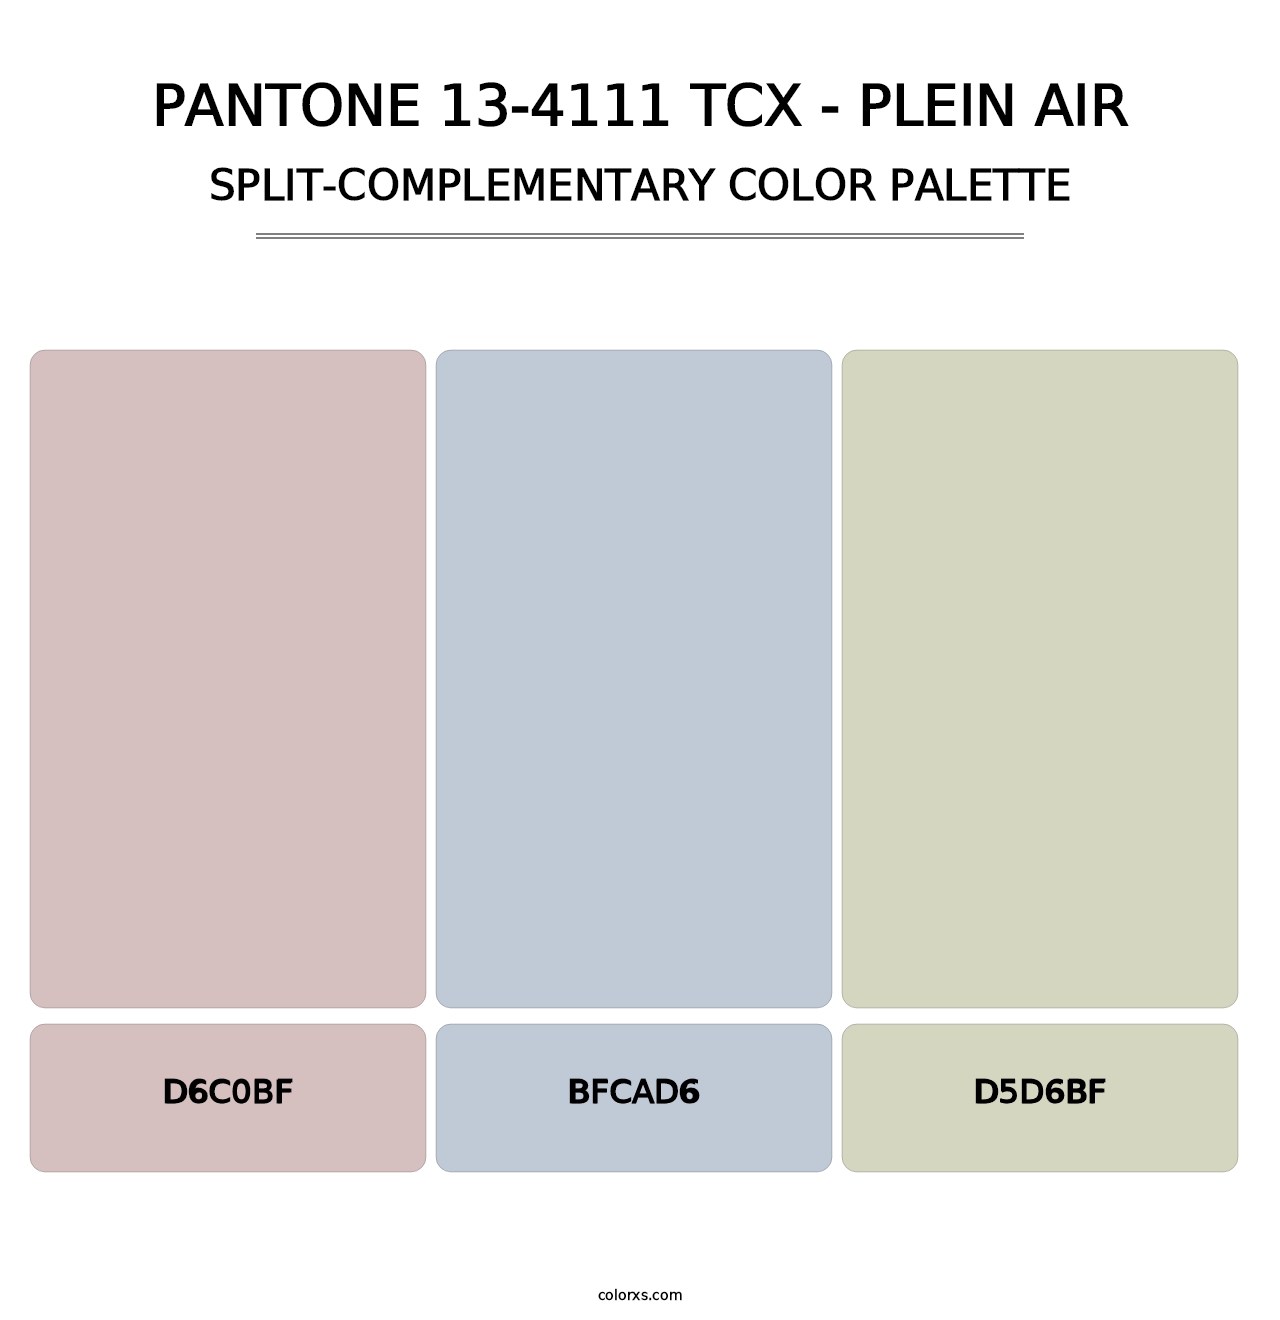 PANTONE 13-4111 TCX - Plein Air - Split-Complementary Color Palette